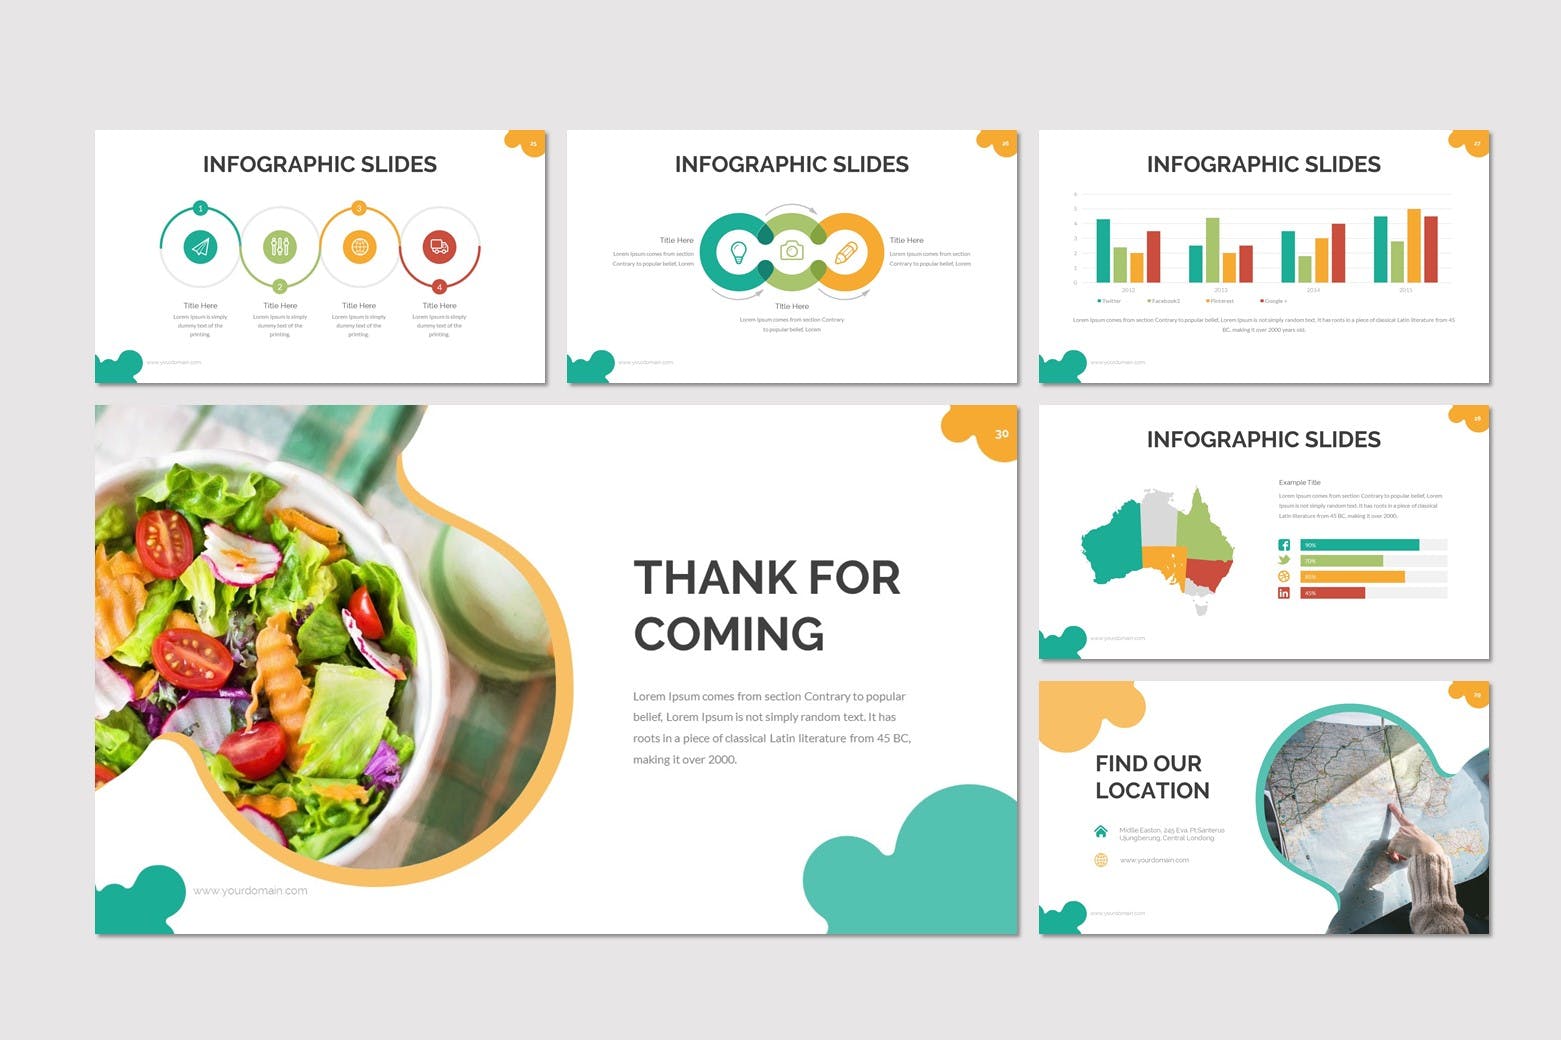 营养学讲座/健康食品PPT幻灯片模板 Boul – Food Powerpoint Template设计素材模板